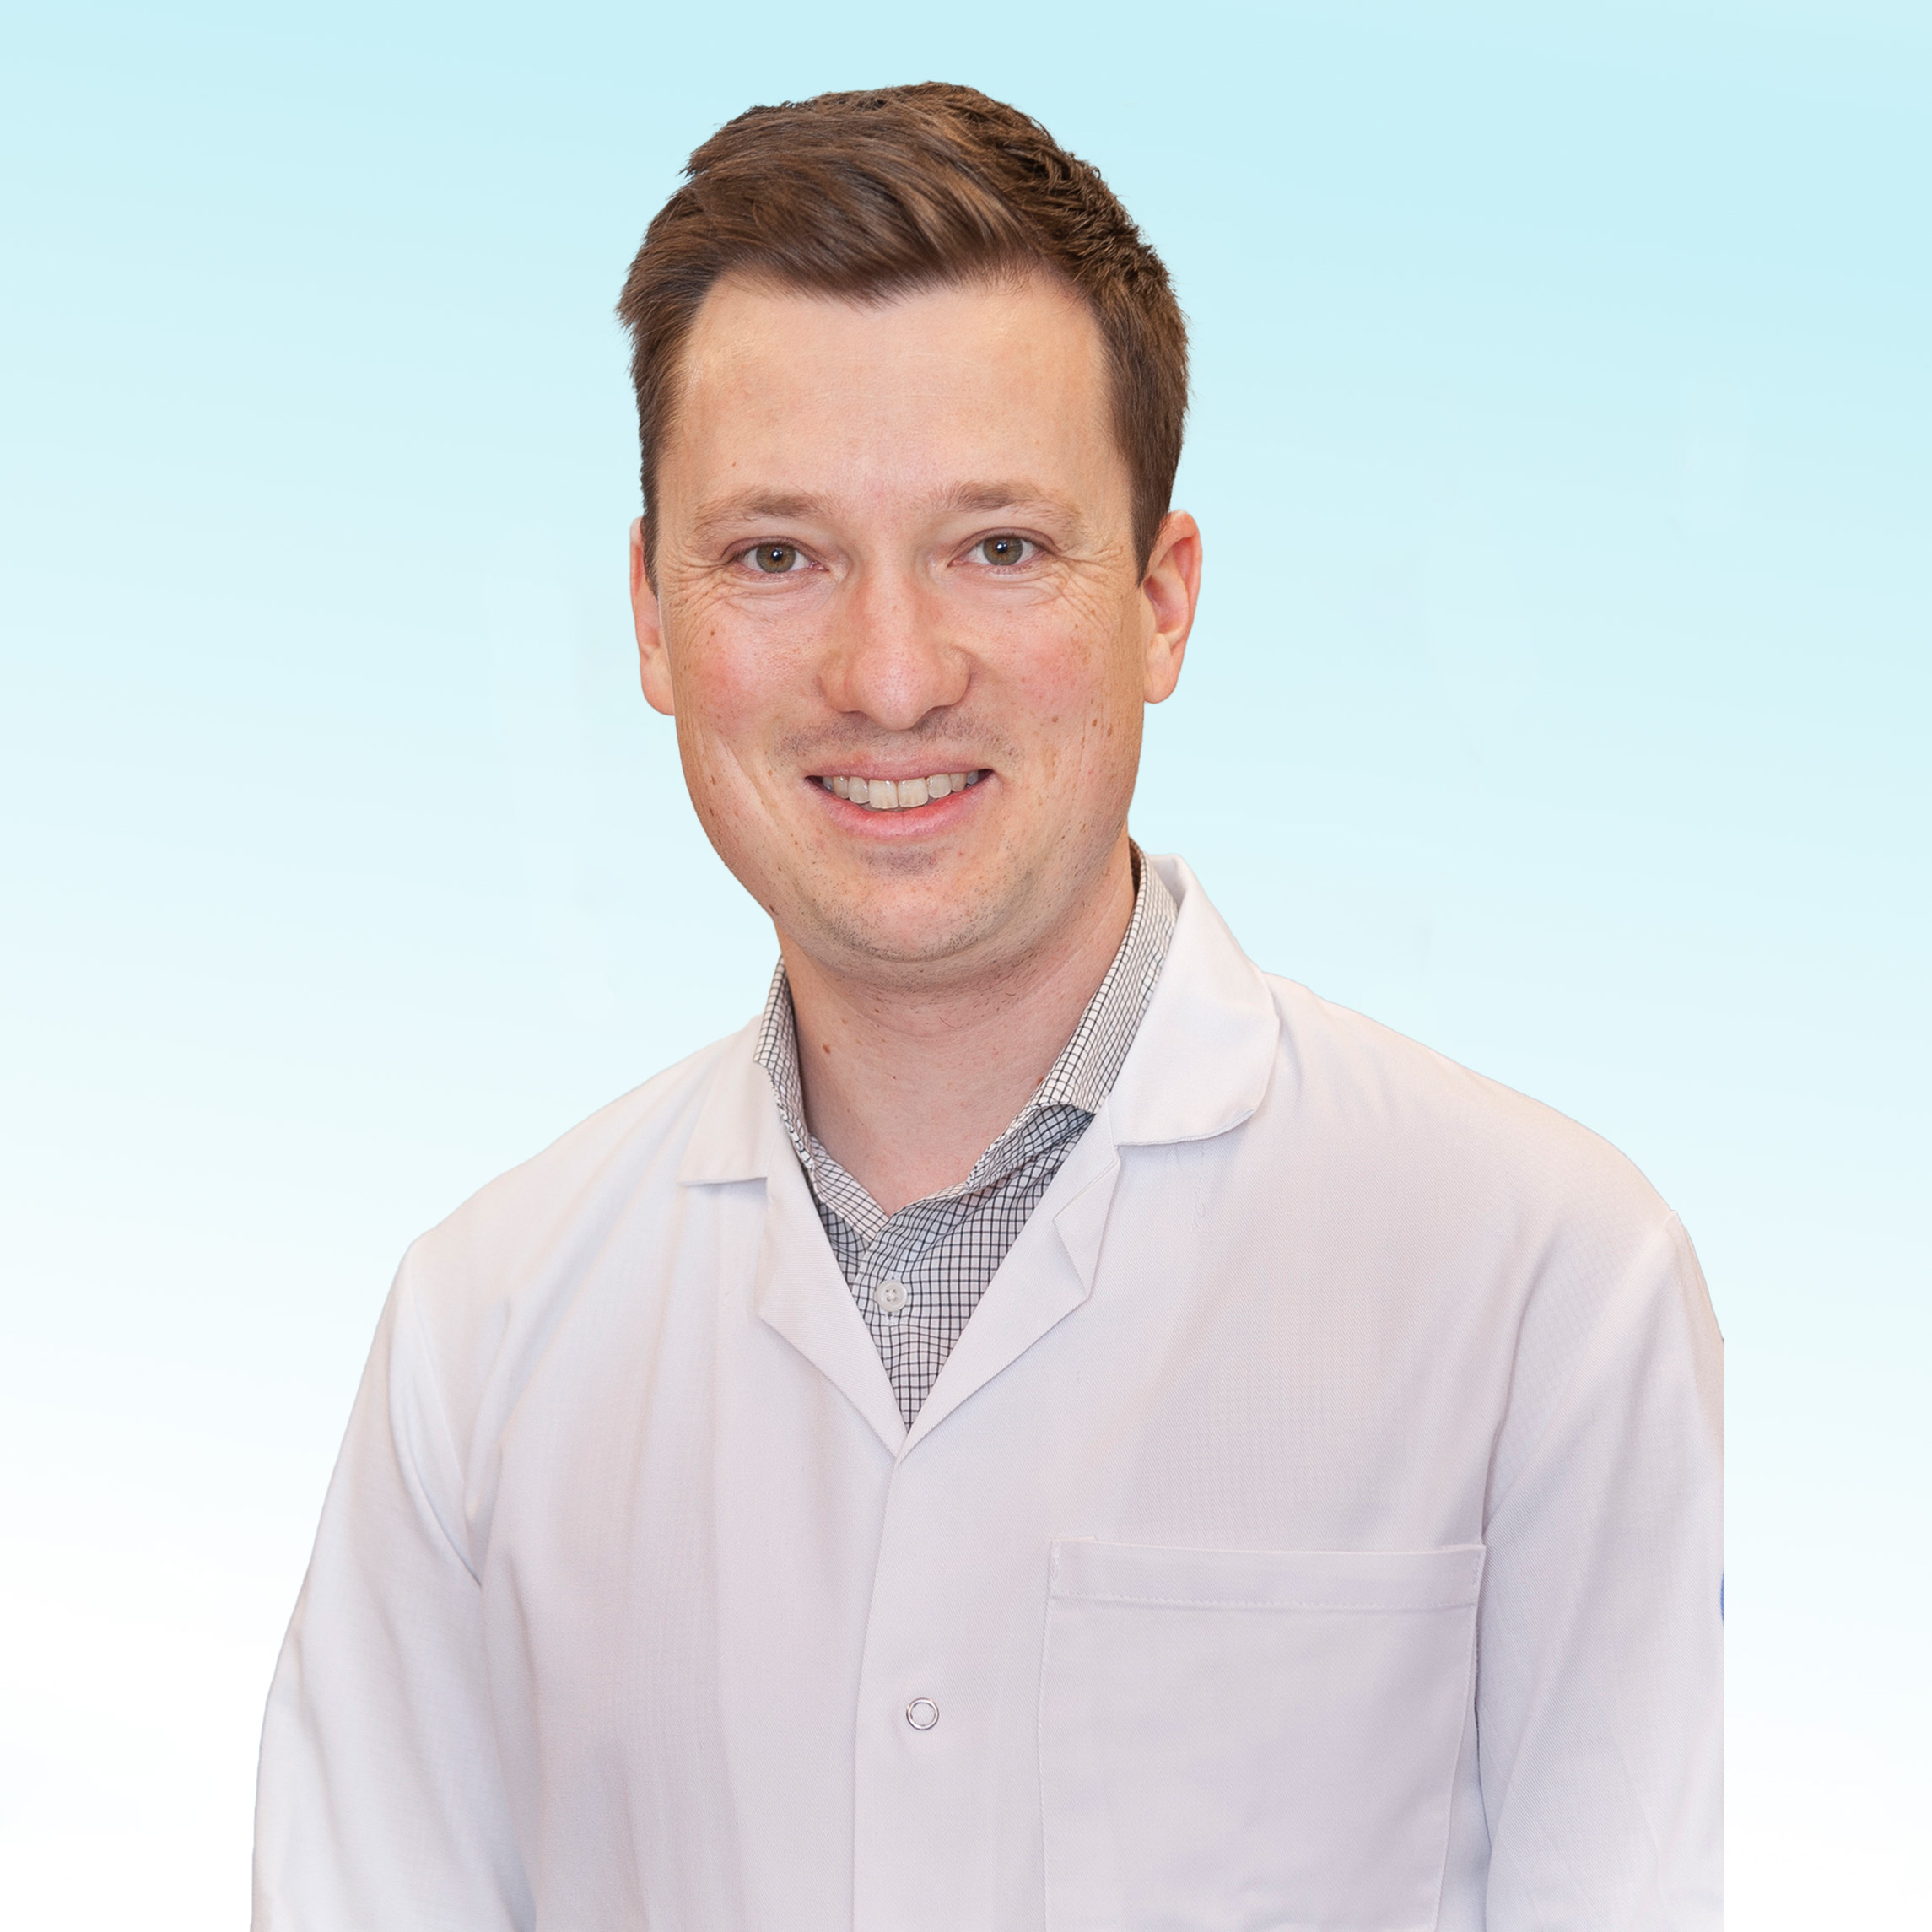 Dermatologue, Dr. med. Lukas Krähenbühl